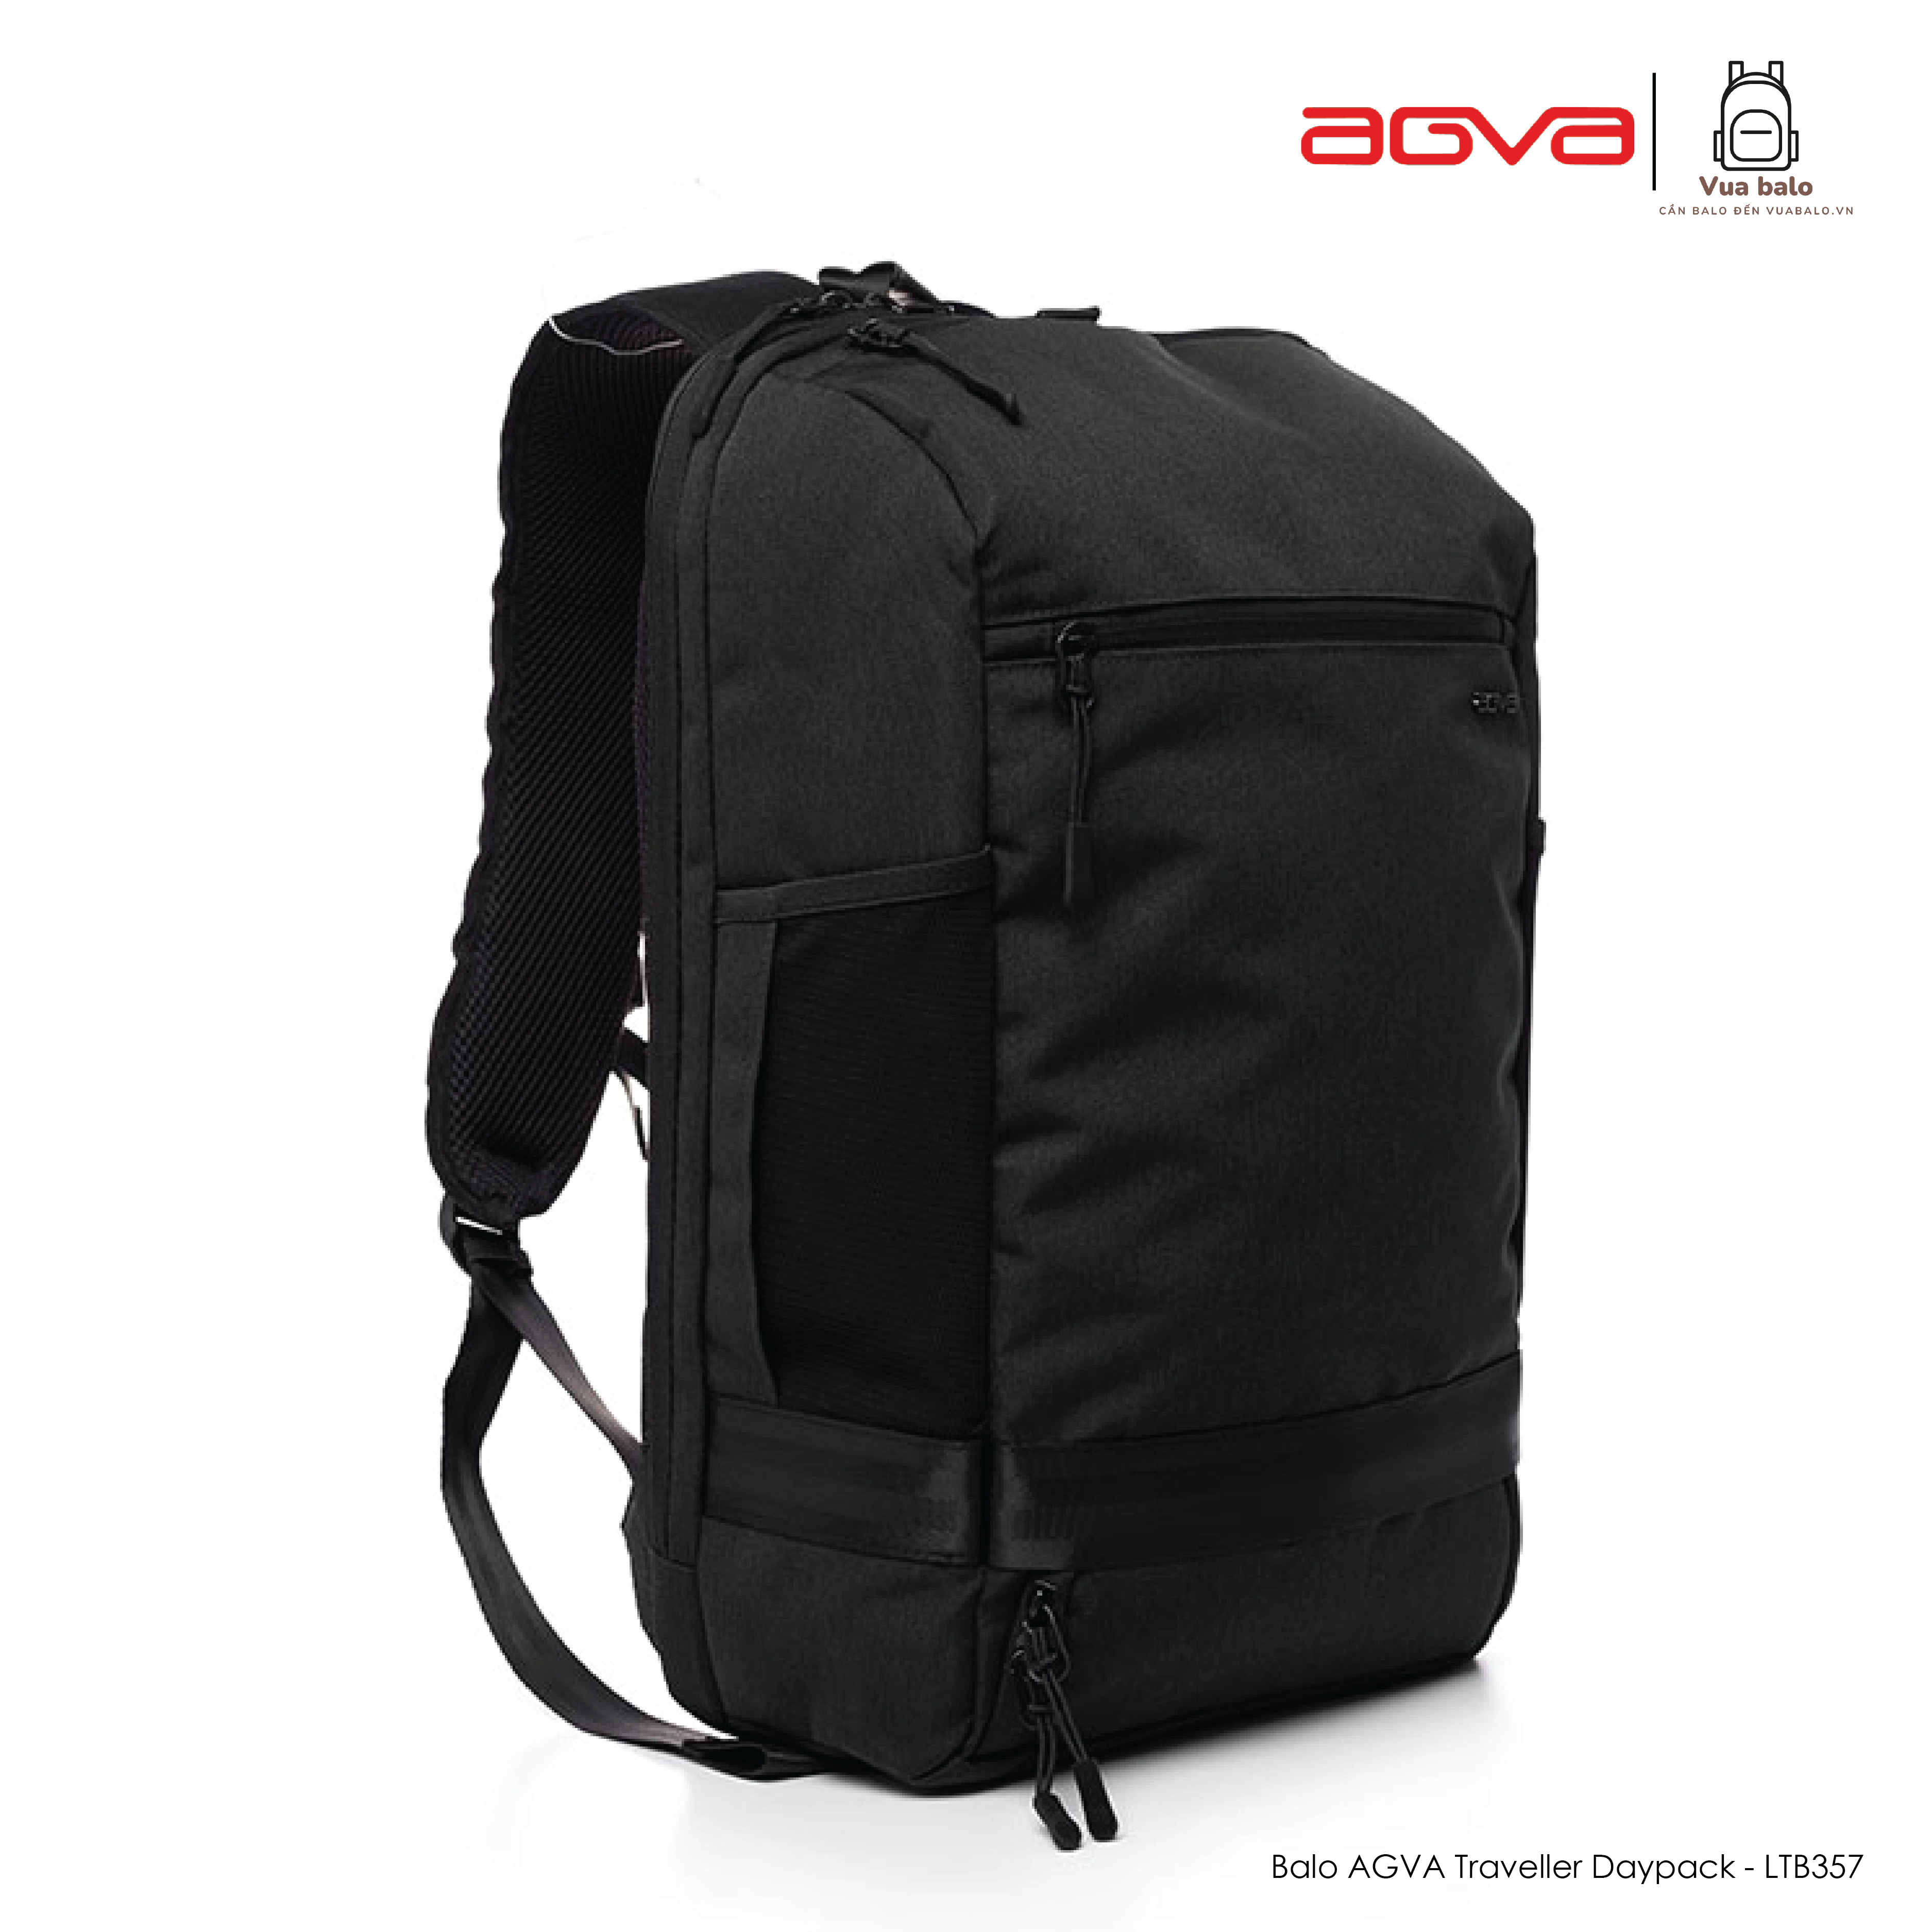 Balo AGVA Traveller Daypack 15.6 LTB357BLACK Kích thước 33.5 x 11.5 x 46